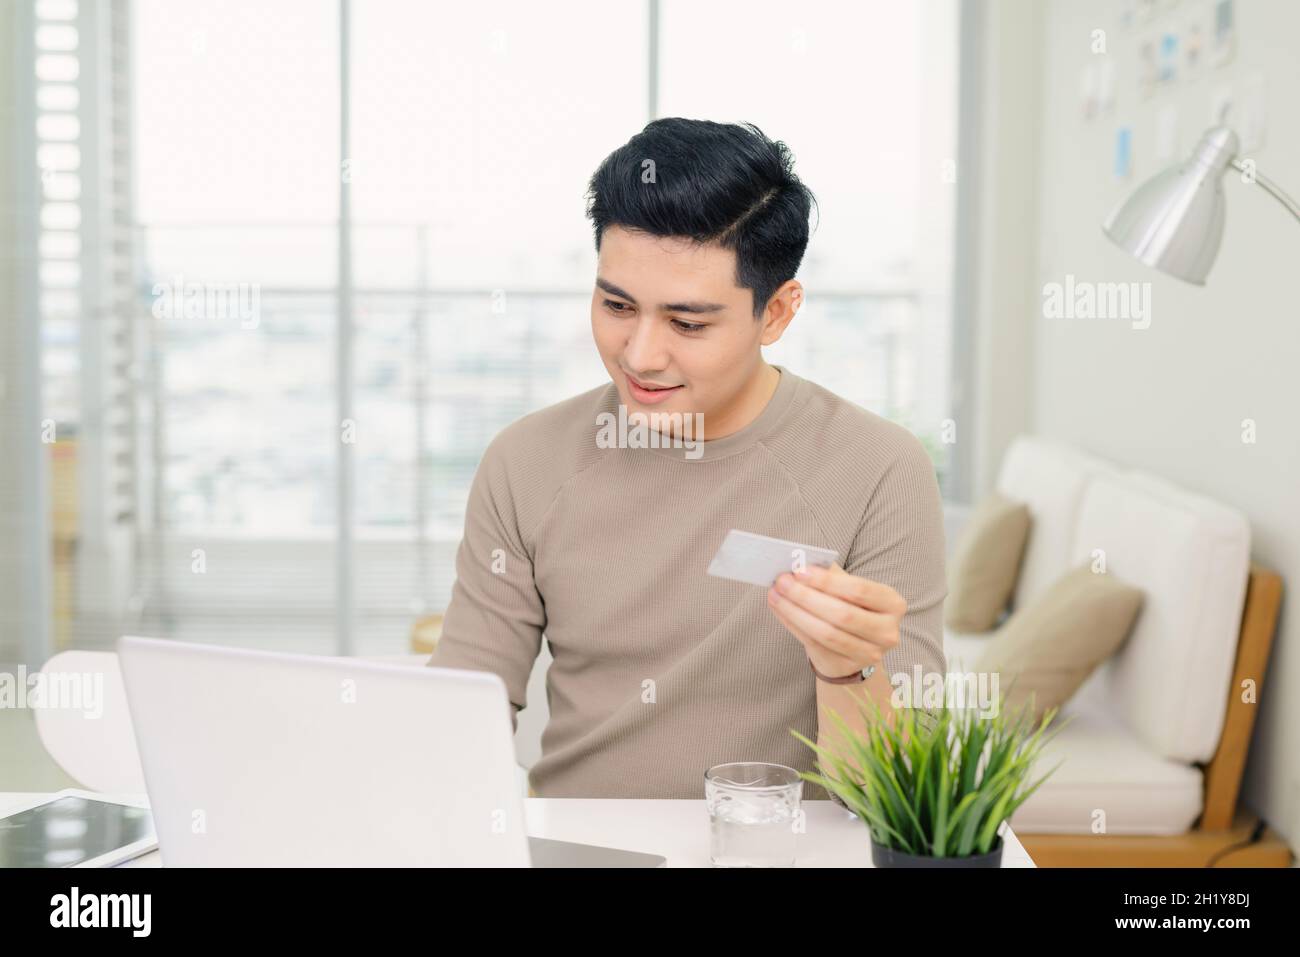 Hübscher junger Geschäftsmann, der einen Computer benutzt, während er eine Kreditkarte in einem Heimbüro hält Stockfoto